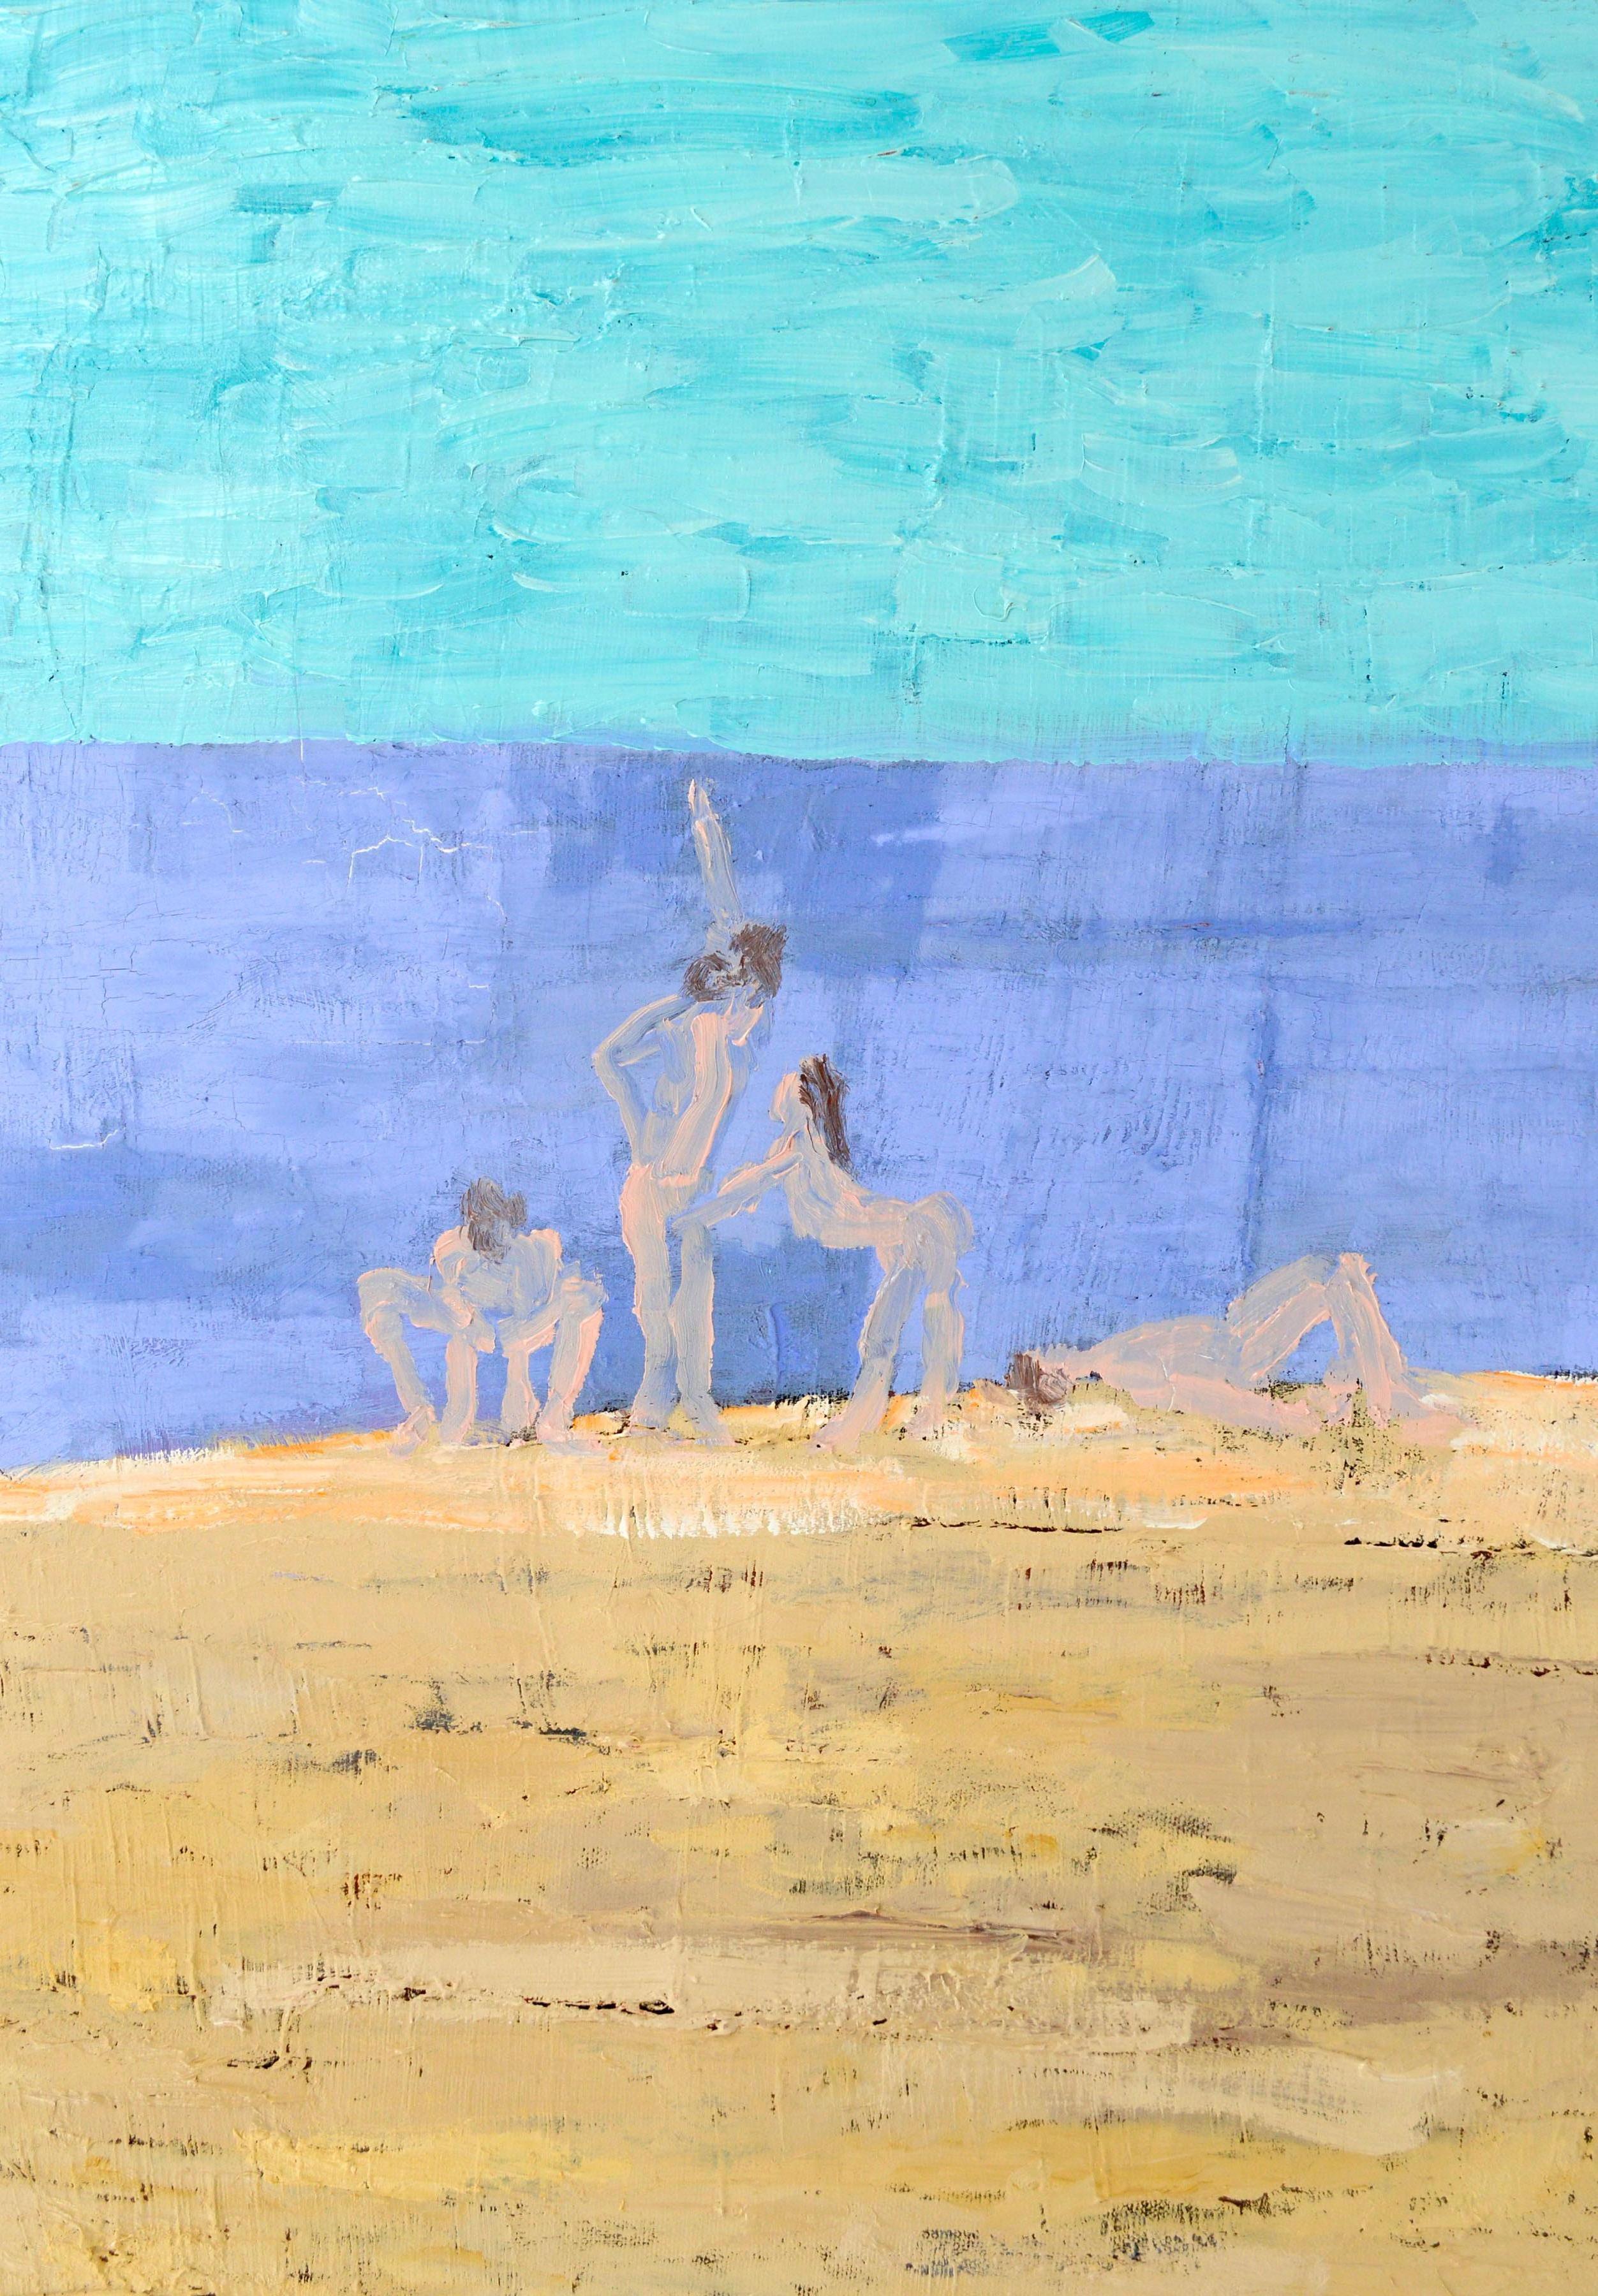 Le rêve d'un artiste - Figure nue sur la plage, autoportrait surréaliste  - Contemporain Painting par Michael Pauker 